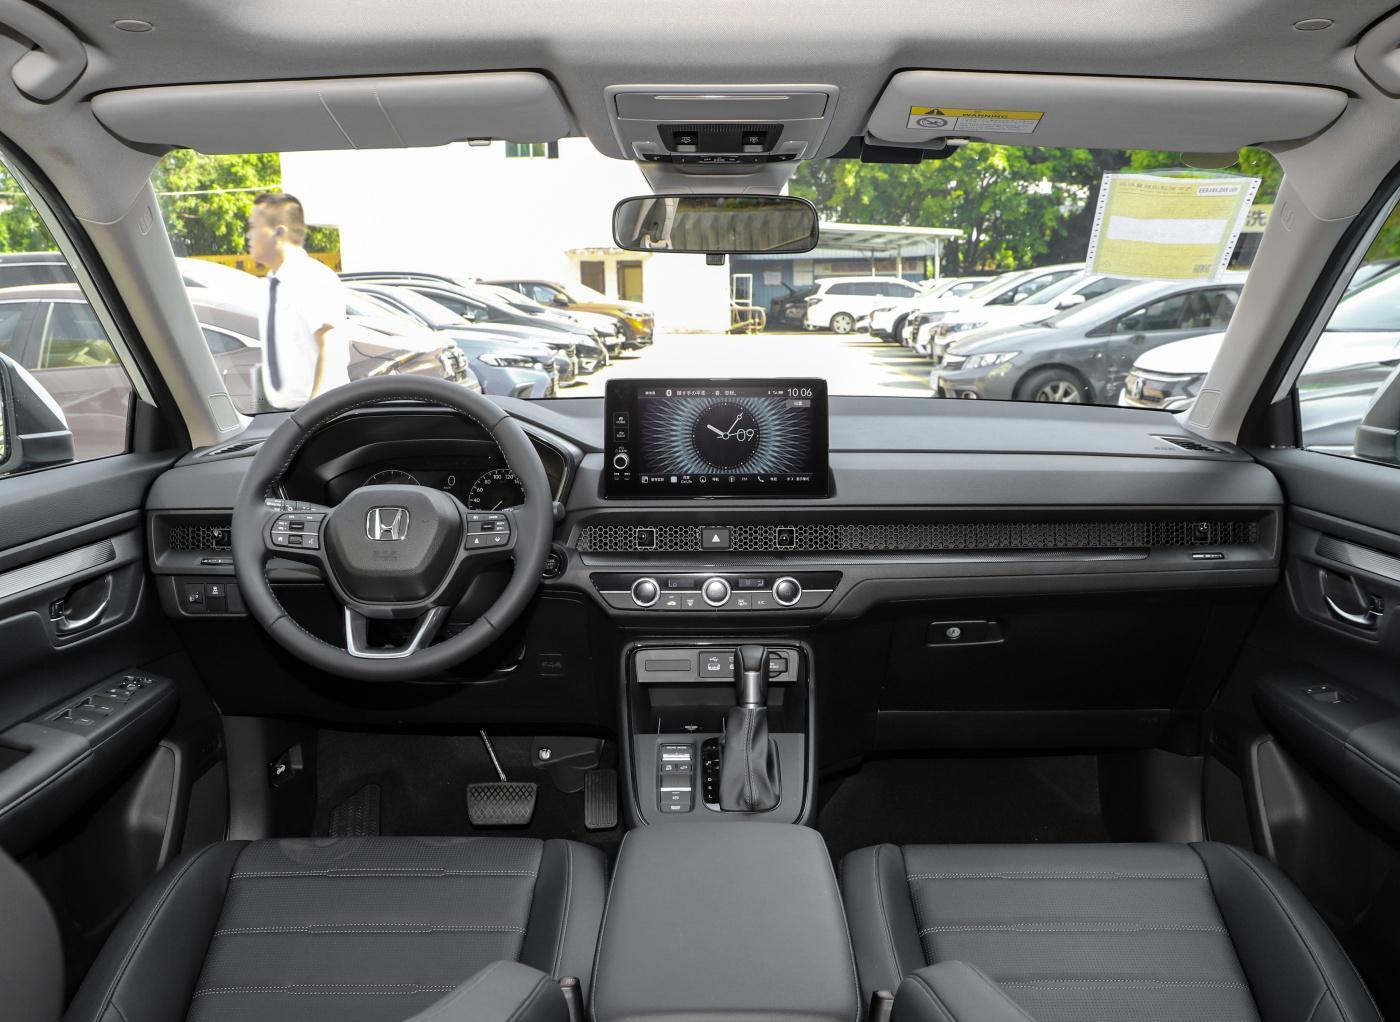 Honda CR-V Automobile central control